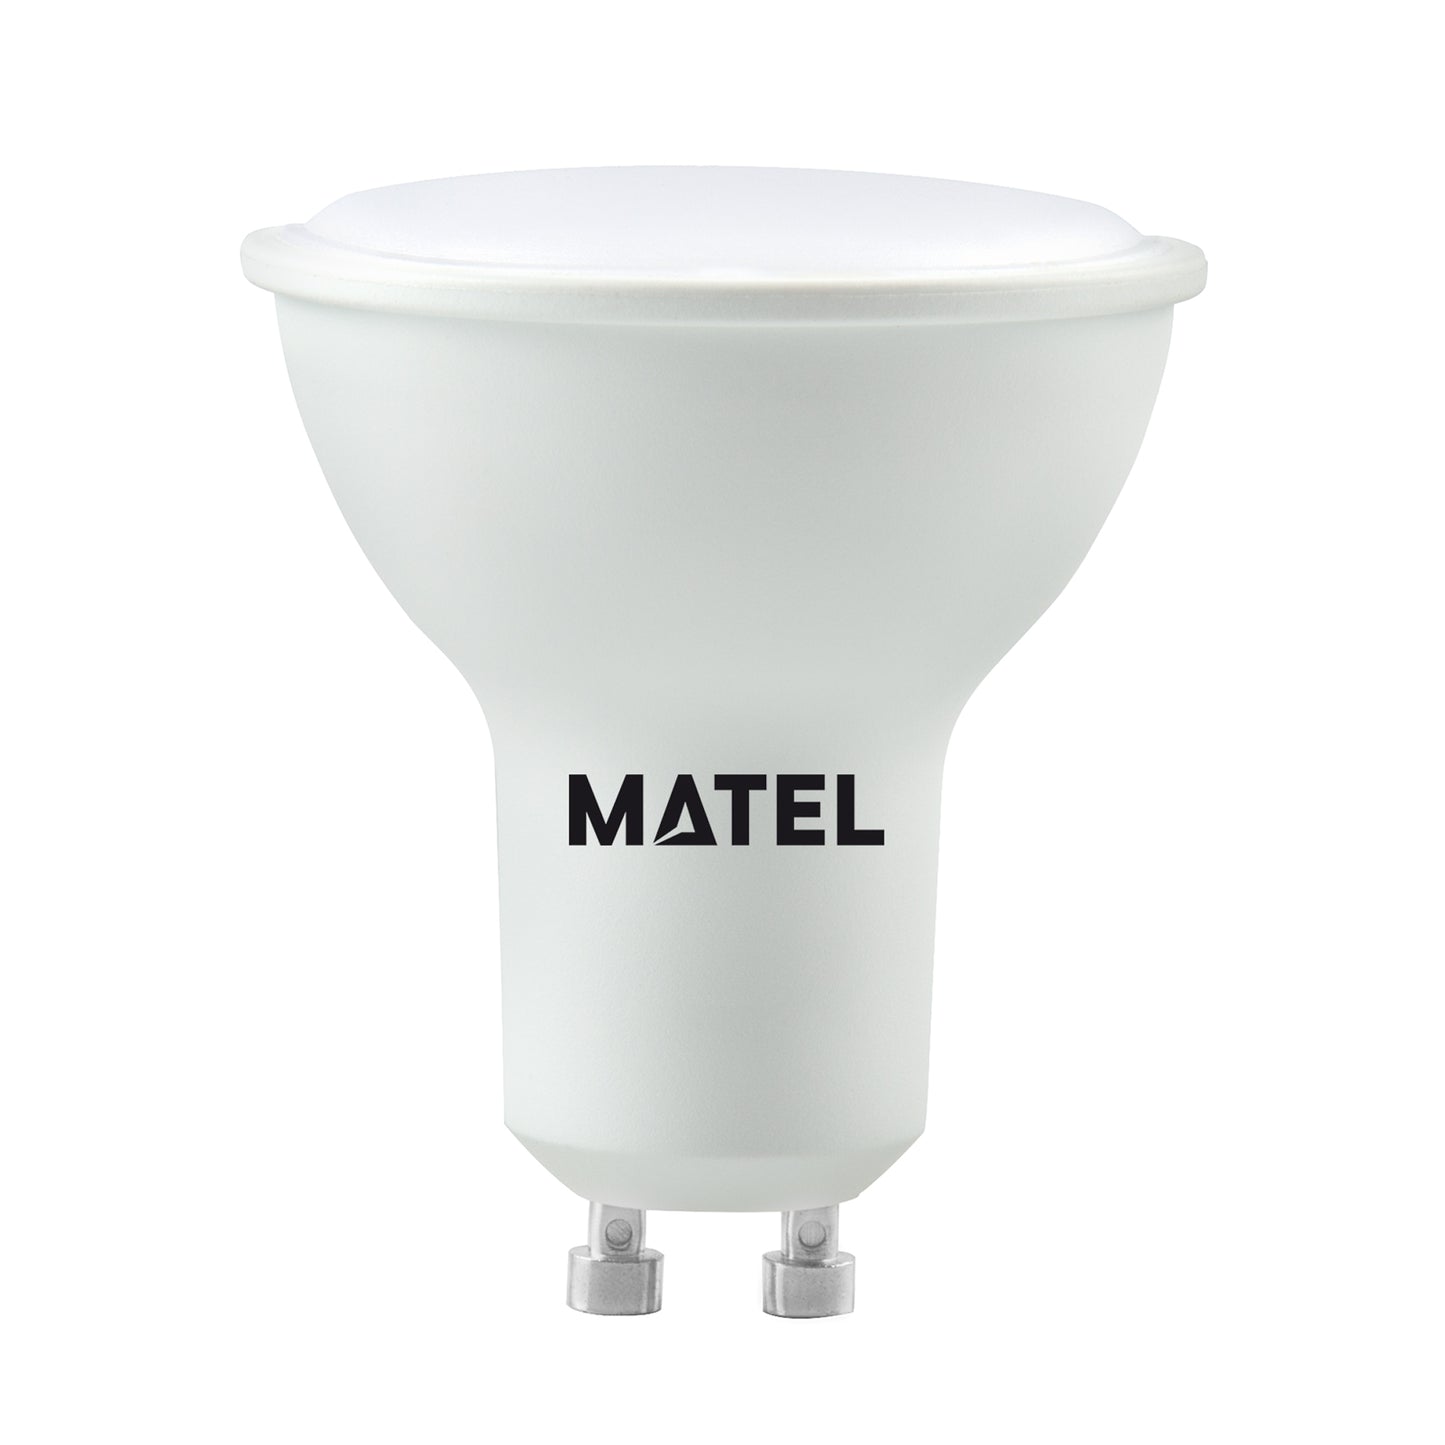 MATEL DICROICA LAMPE LED GU10 3W NEUTRE 